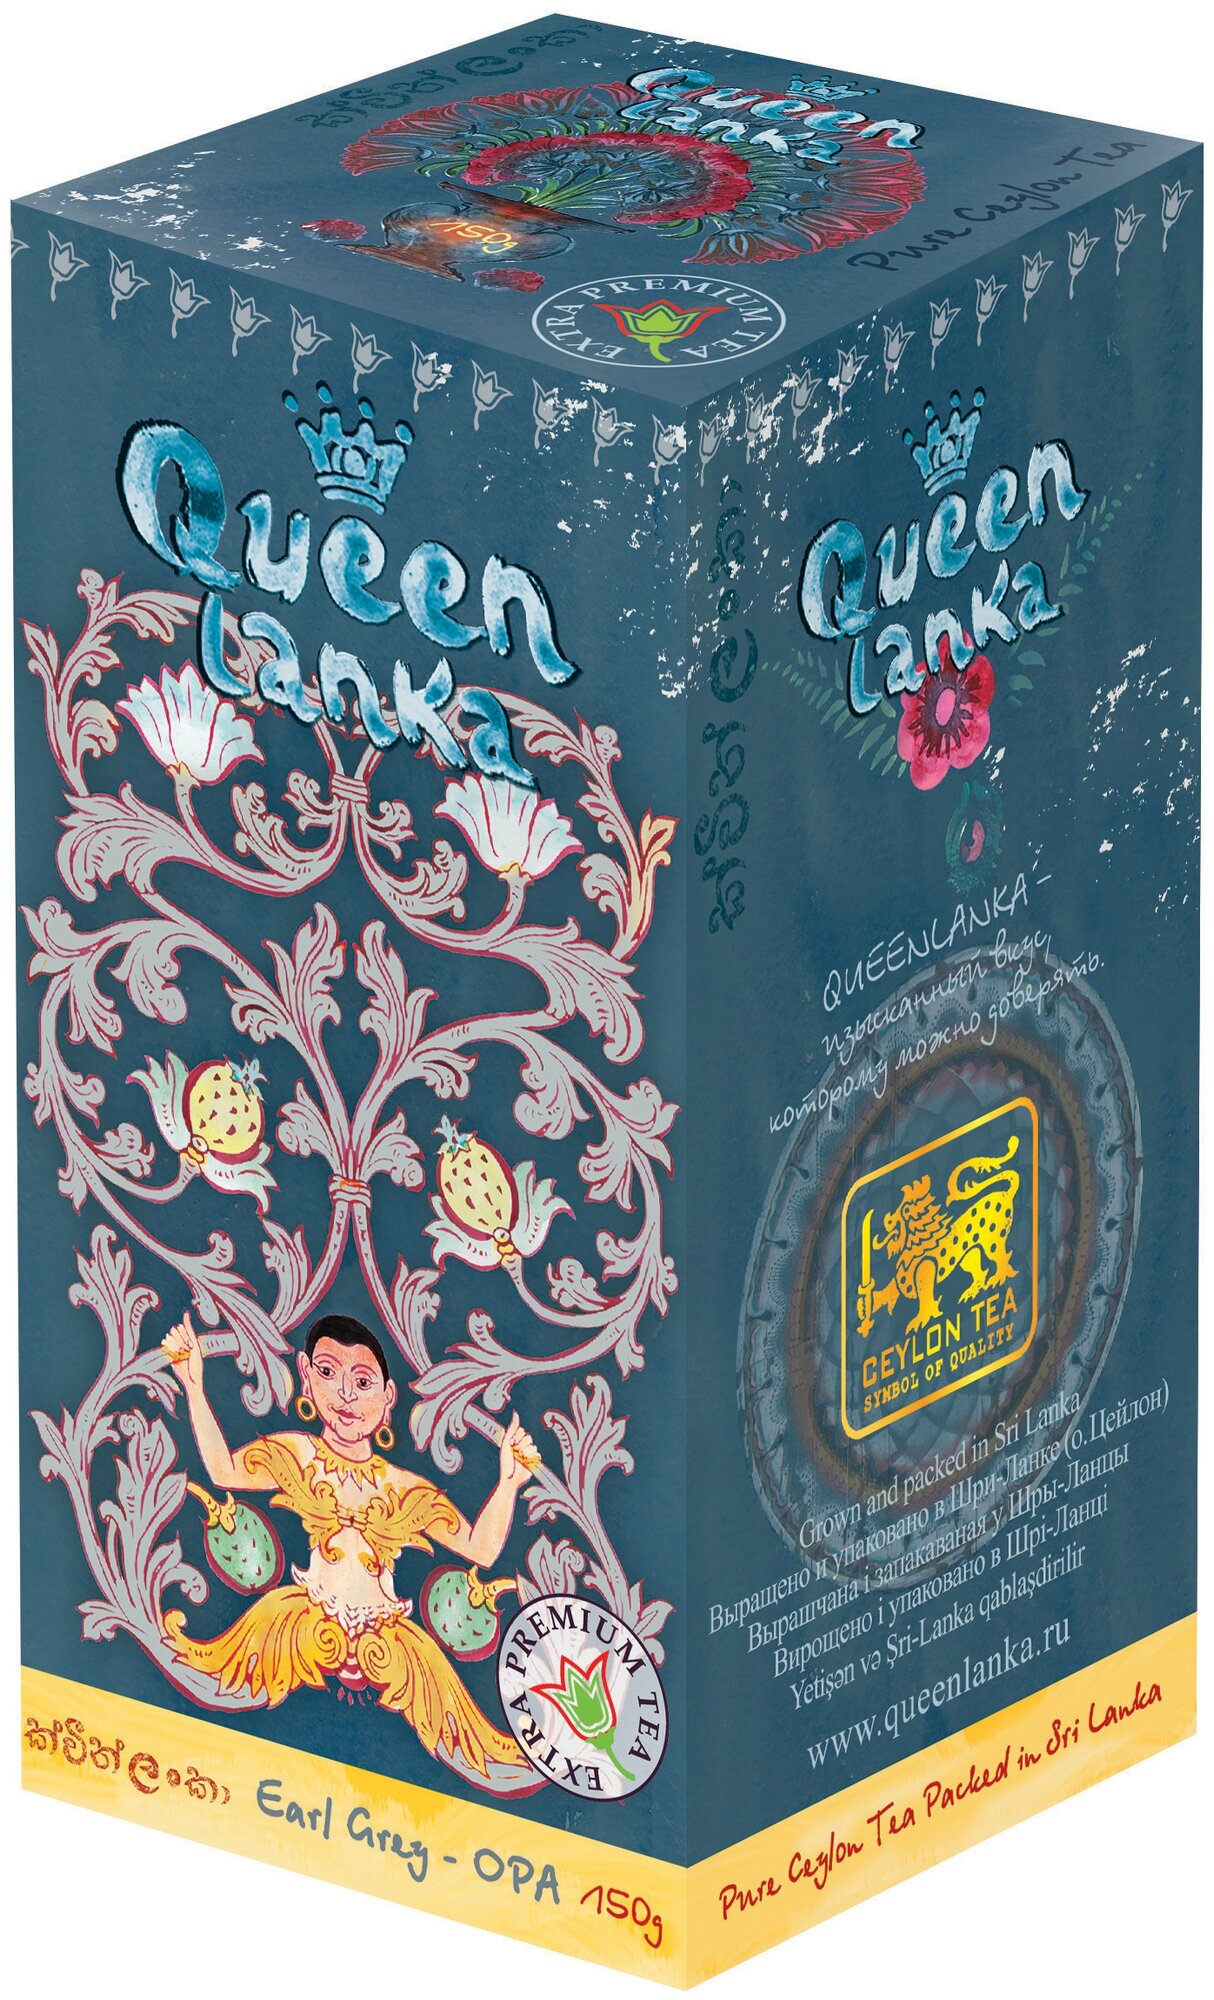 Чай QUEEN LANKA "ЭРЛ грей", отборный крупнолистовой цейлонский чай с натуральным маслом бергамота. Сделан на основе стандарта ОРА, 150 гр